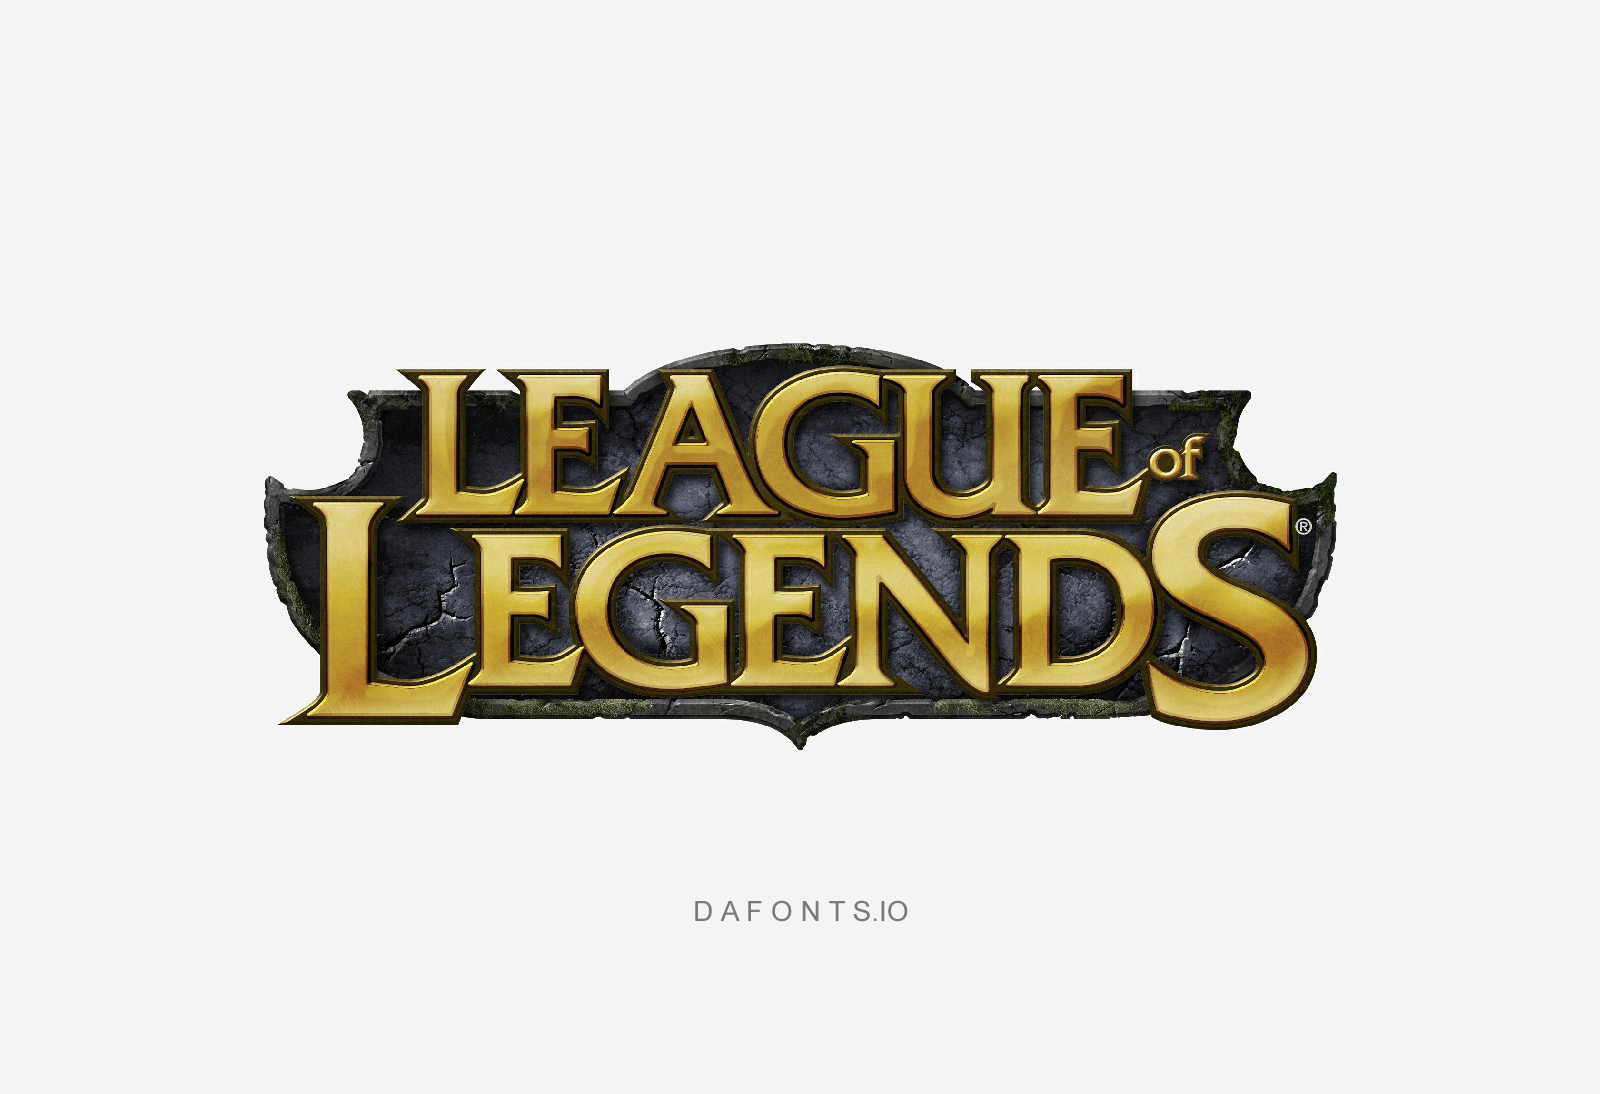 League of Legends Font